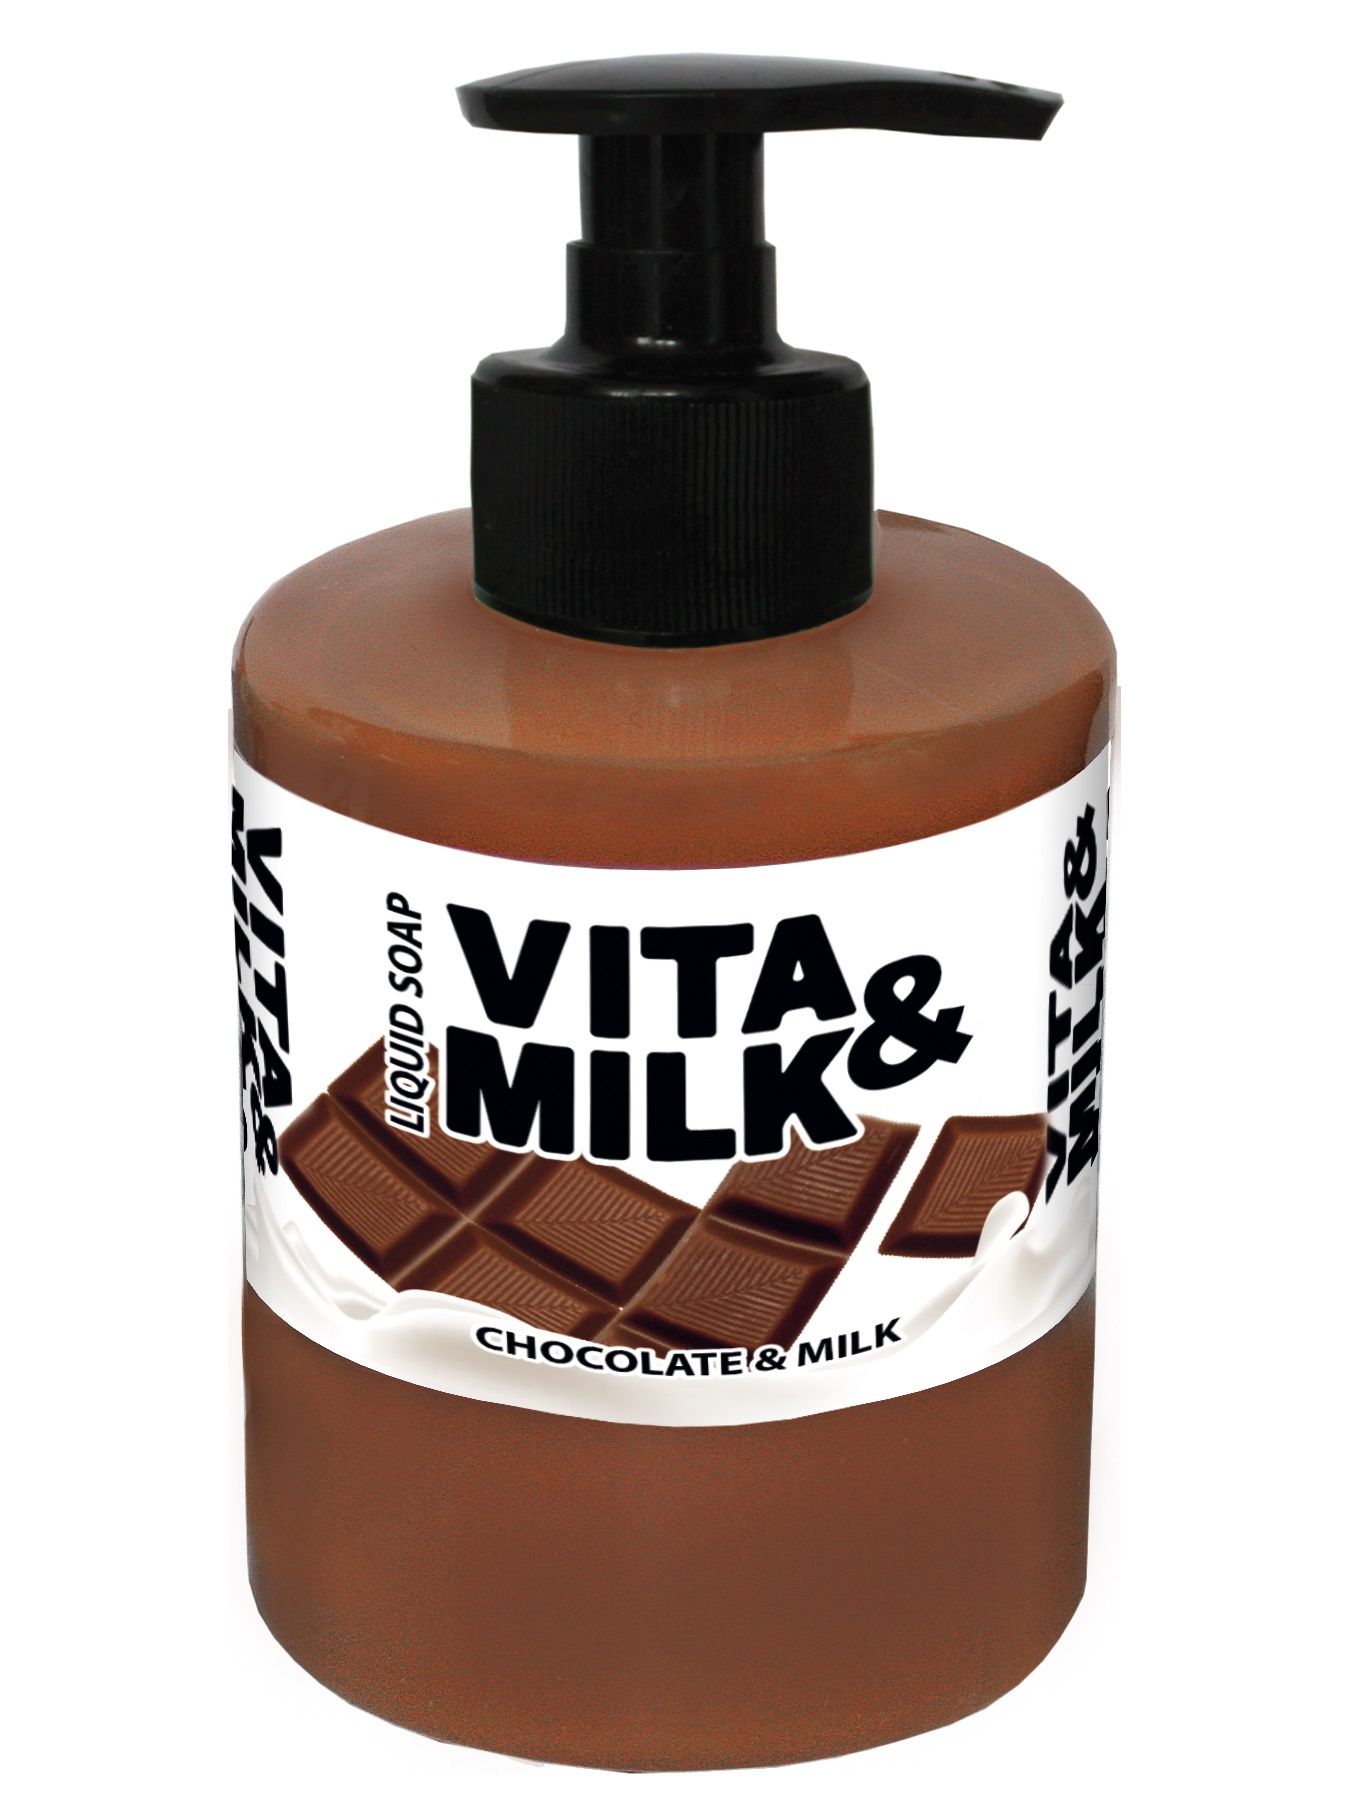 Шоколадный гель для душа. Мыло Vita Milk жидкое Vita. Шампунь Дольче Милк шоколад. Гель для душа Vita & Milk шоколад и молоко.